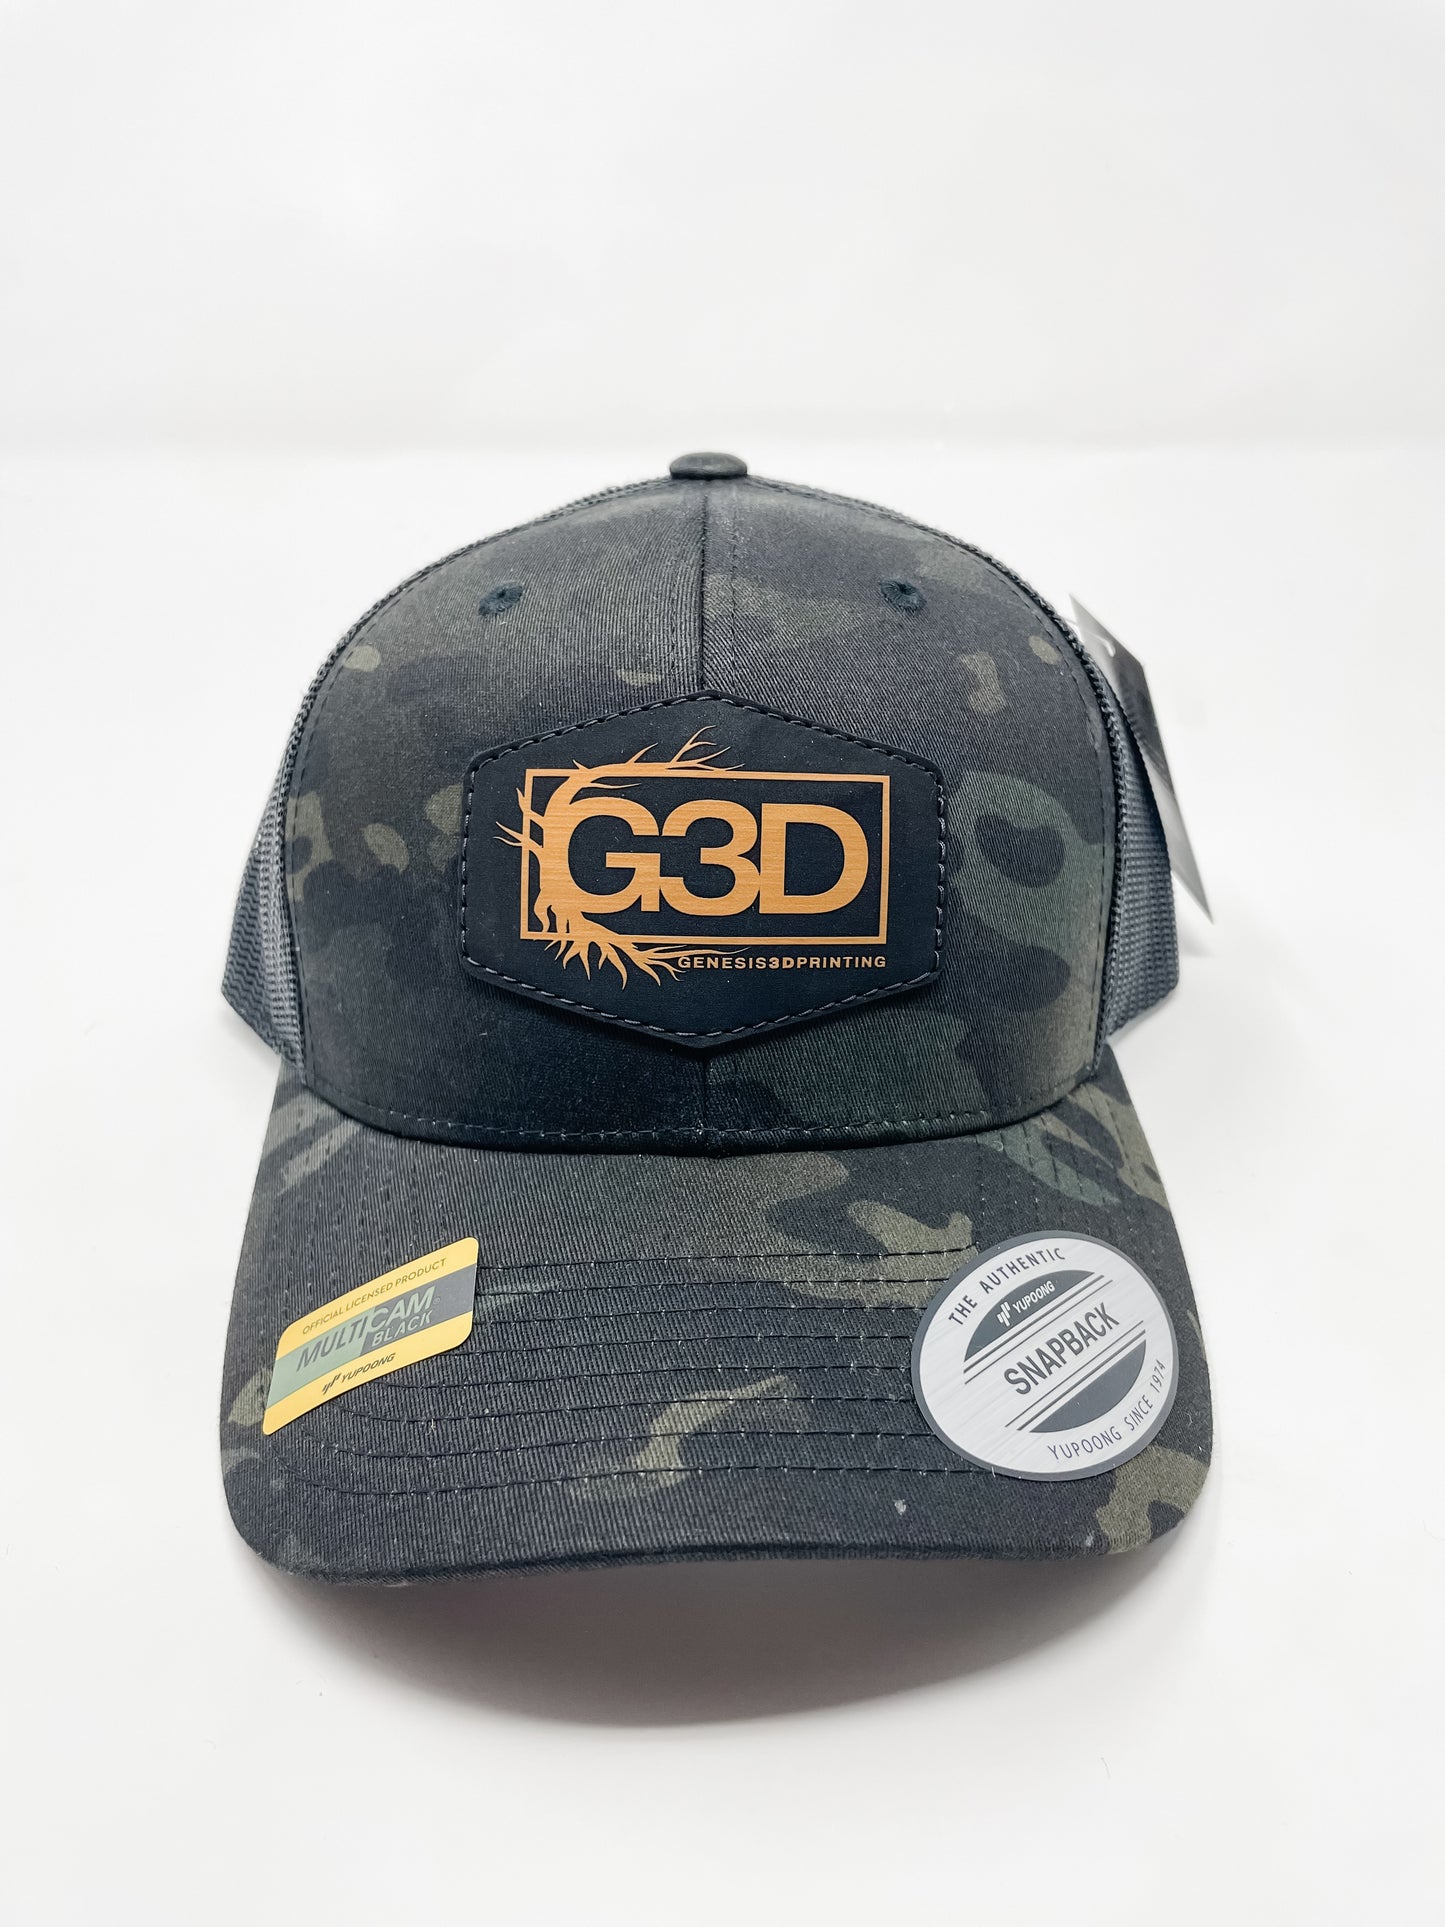 G3D Leather Patch Hat [Multicam Black Camo]